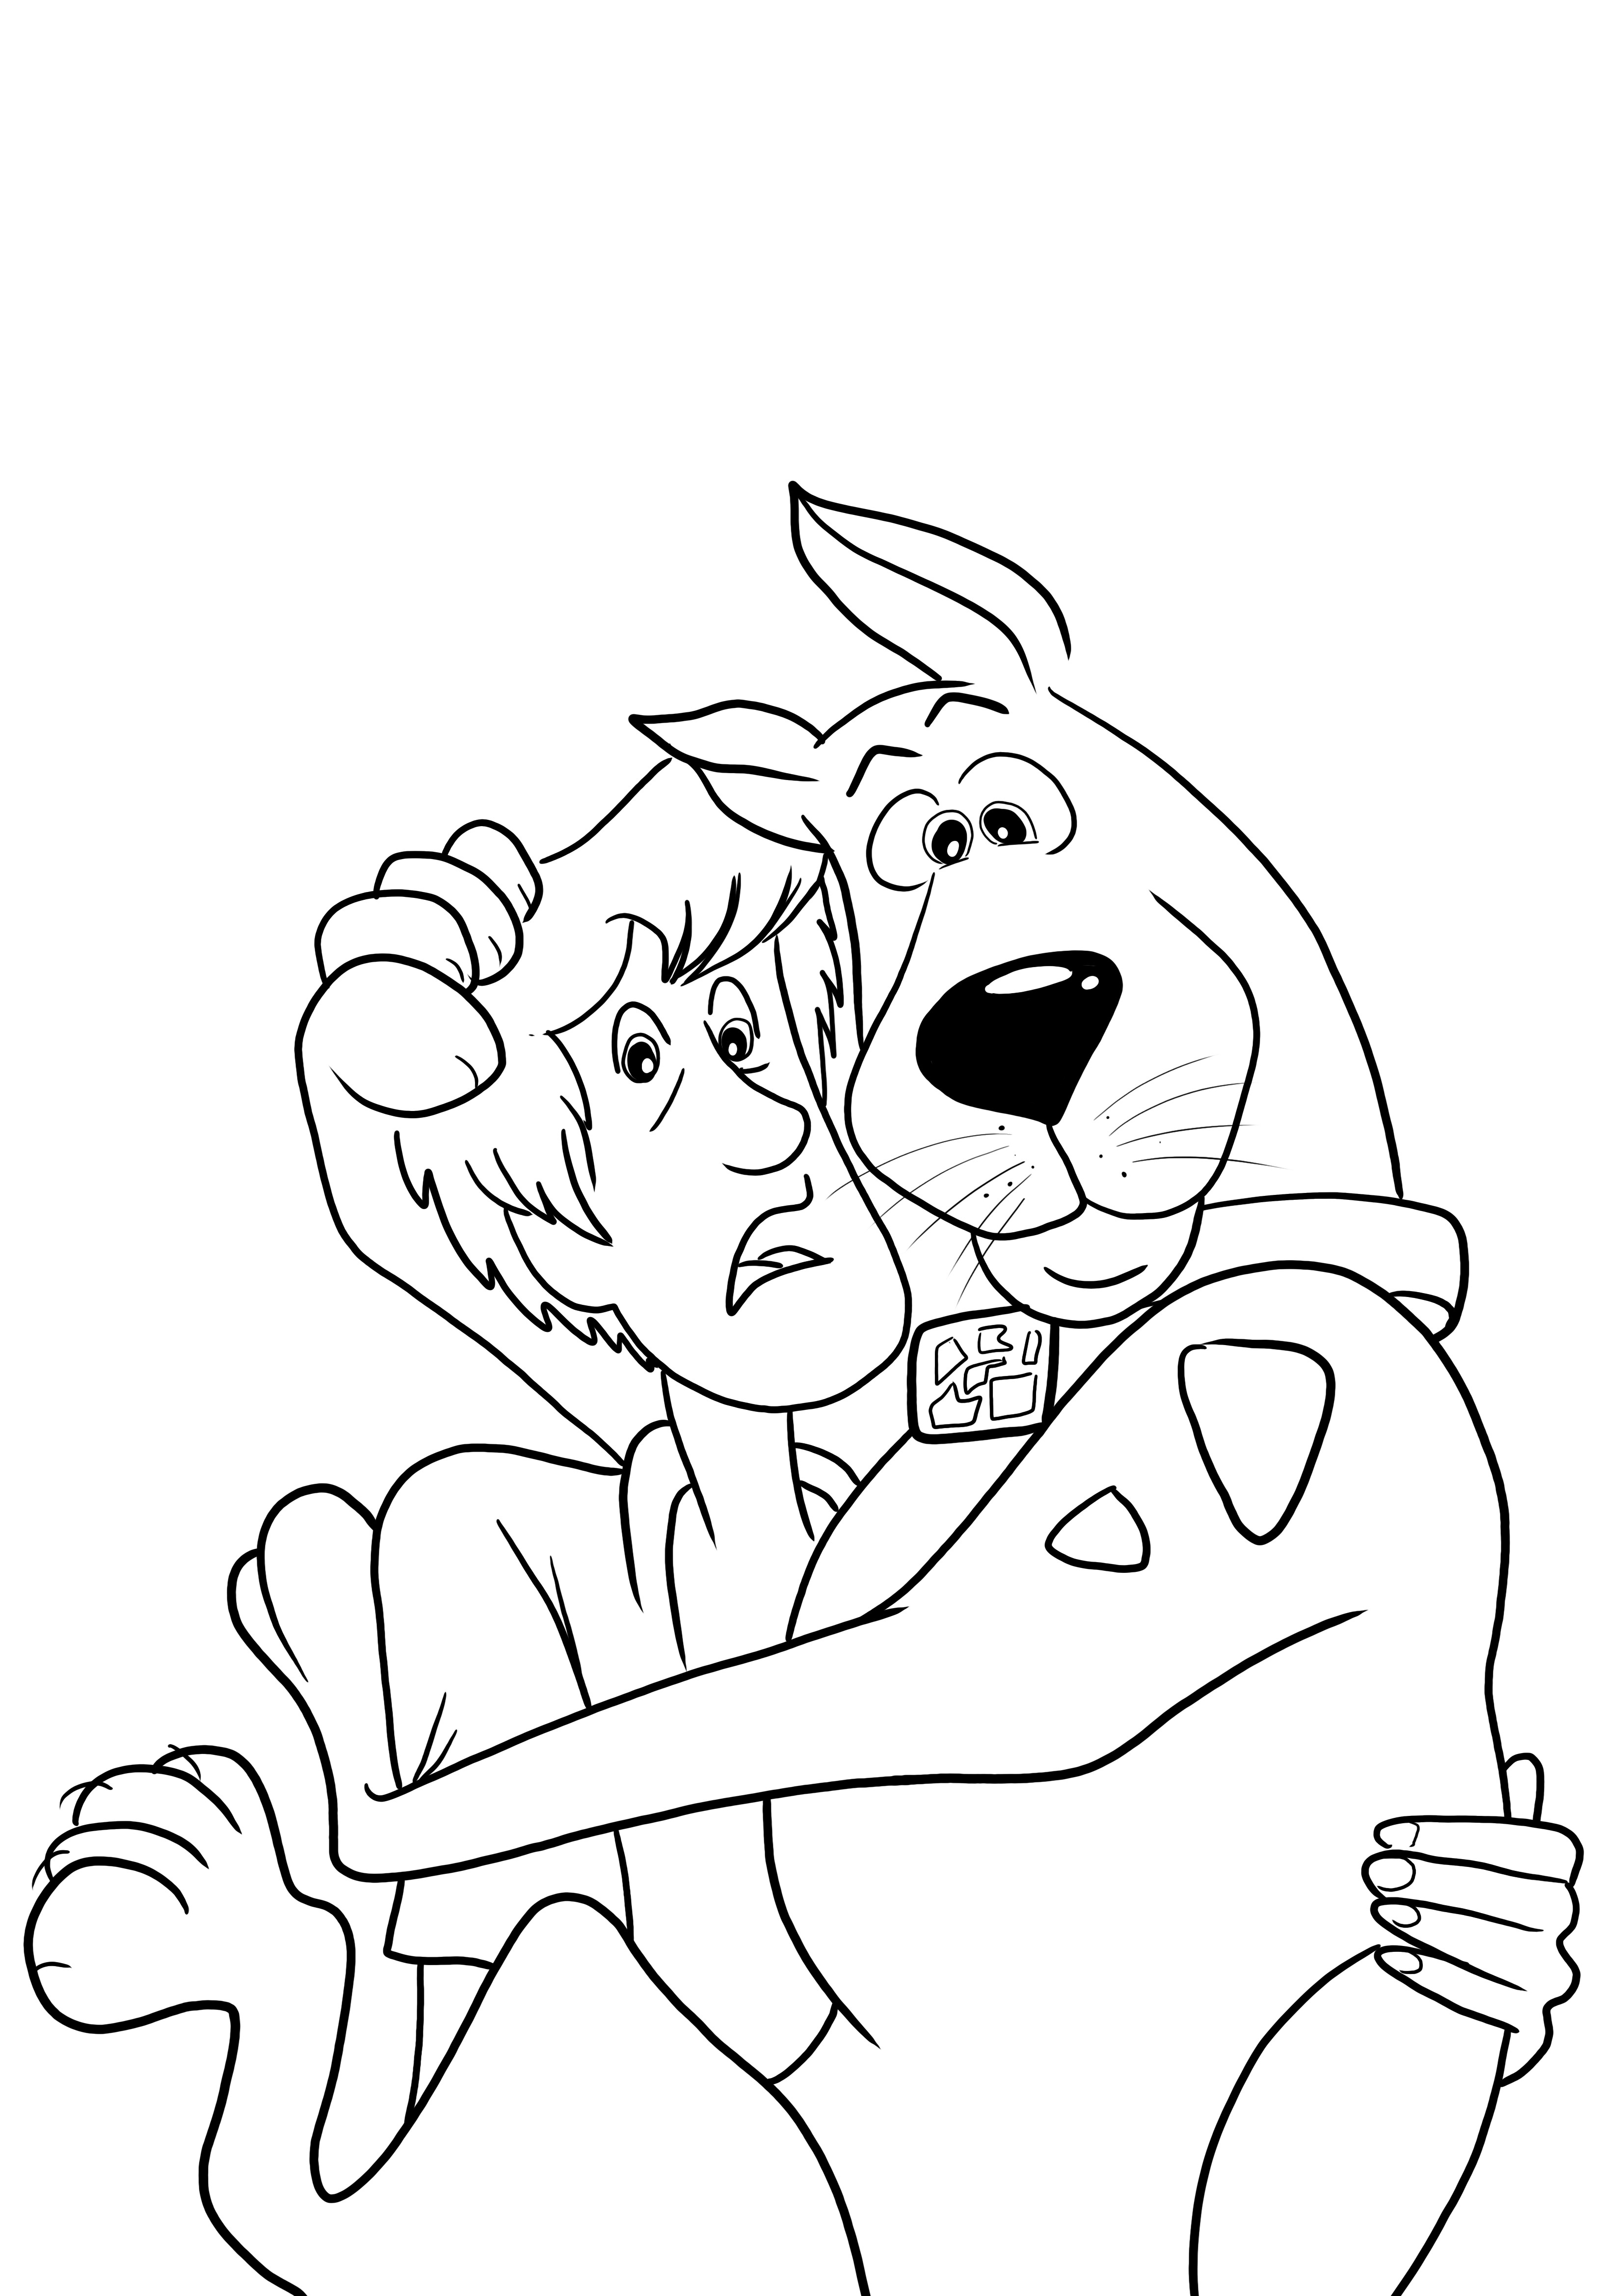 Gratis kleurplaat Scooby Doo en Shaggy zijn bang om te downloaden voor kinderen kleurplaat